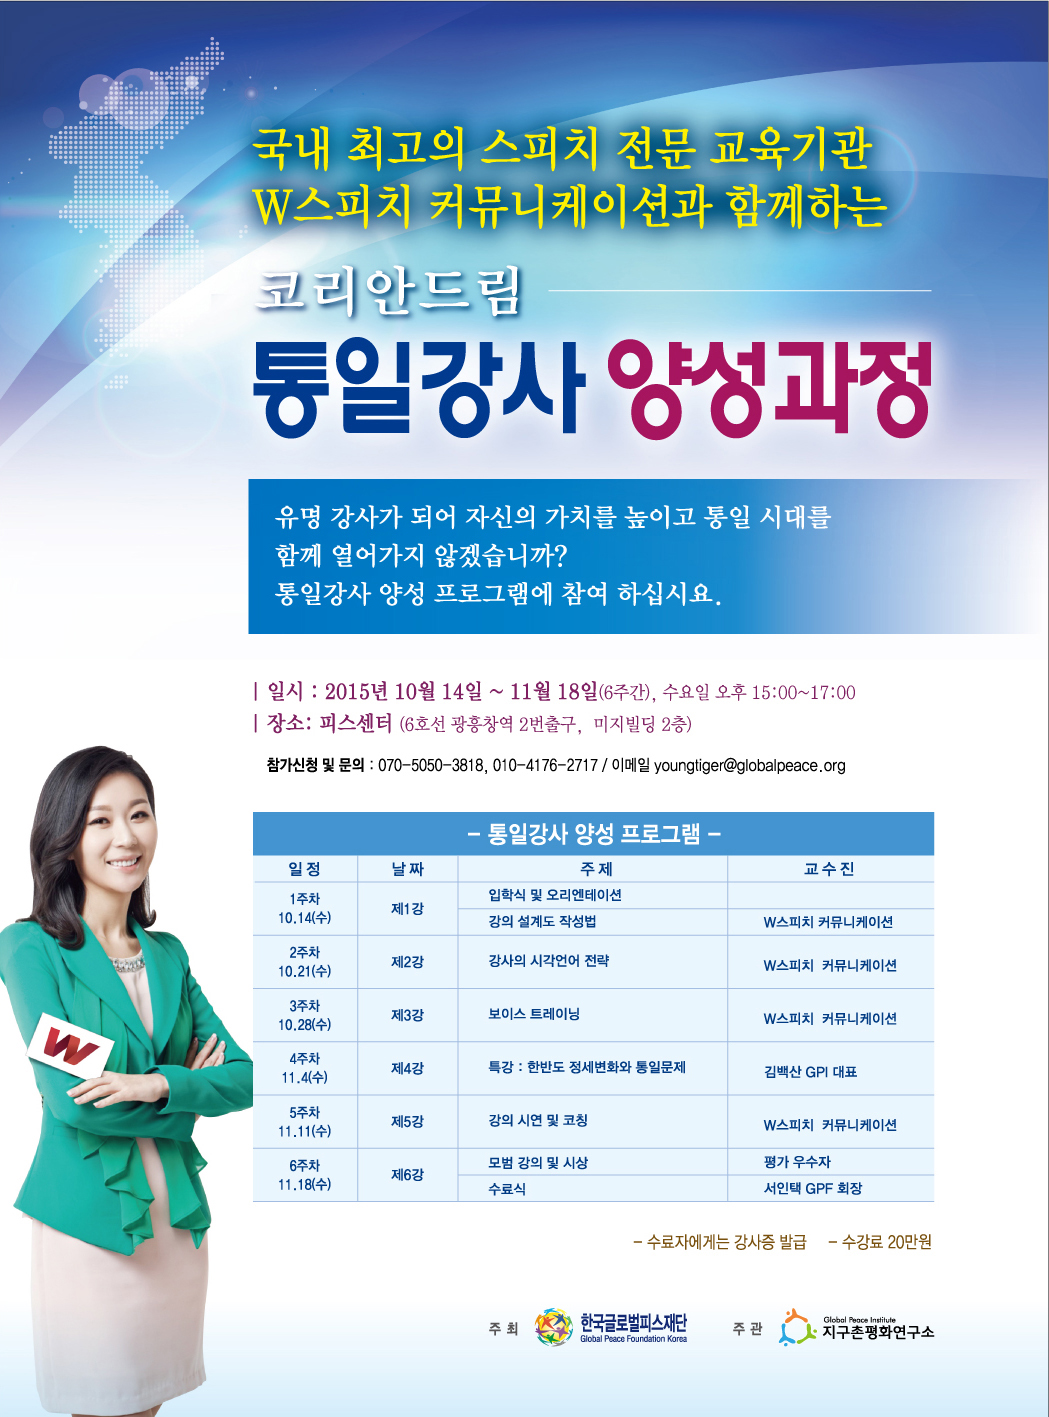 한국GPF, 통일강사 양성과정 참여자 모집